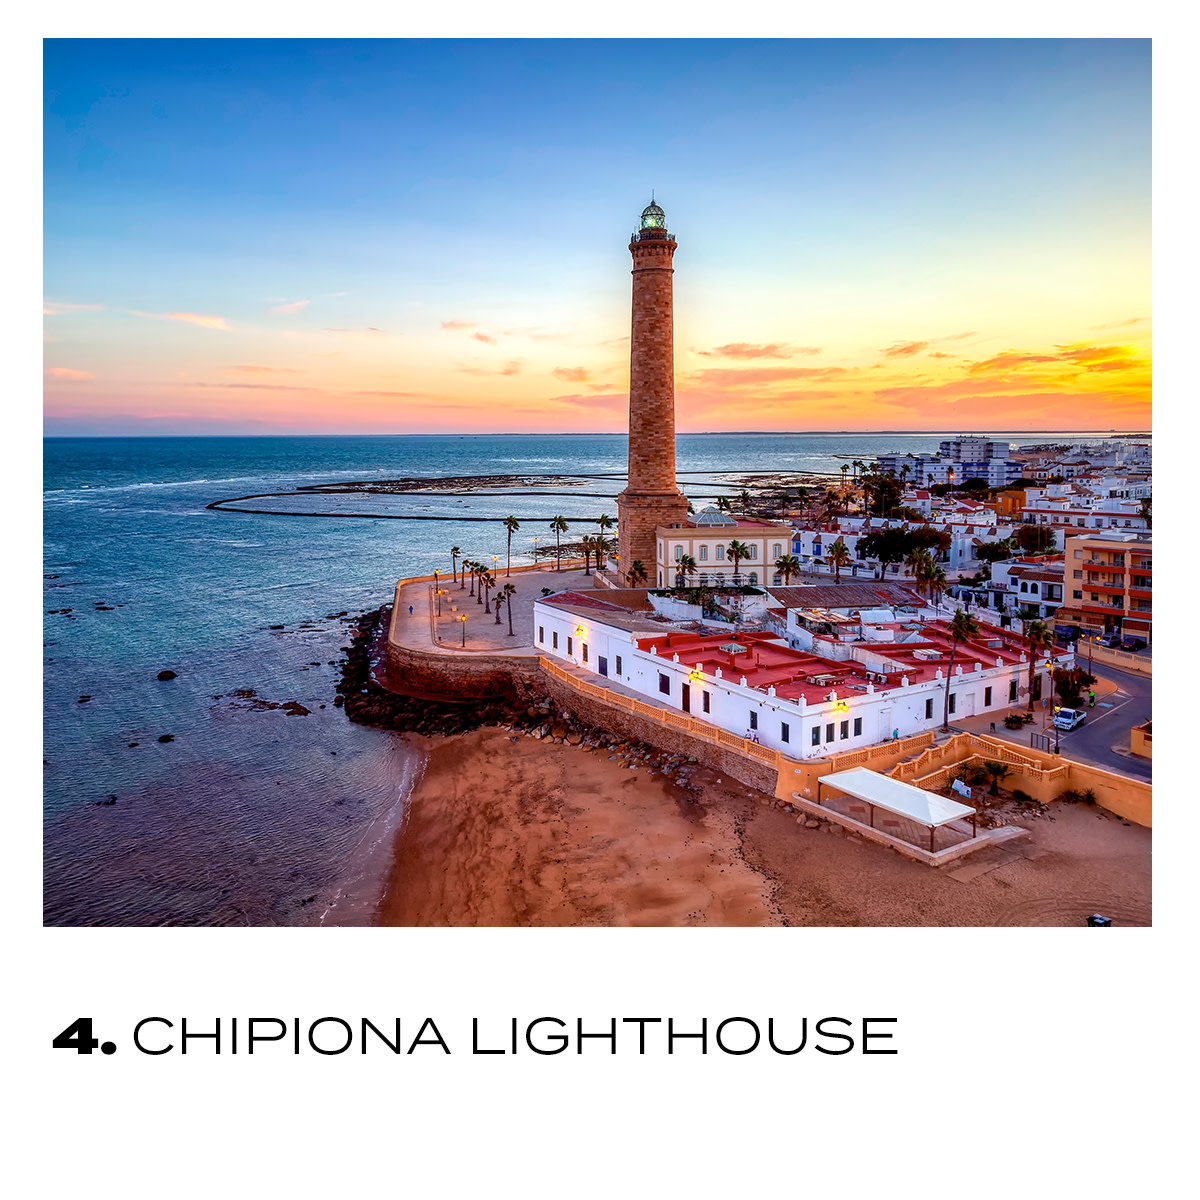 Voici une idée d'itinéraire en #Andalousie ! Vous allez adorer les vues sur la mer ❤️

▶️ Le phare #CabodeGata

▶️ Le phare #Torrox

▶️ Le phare #Trafalgar

▶️ Et le phare de #Chipiona ! 🤗 

👉 bit.ly/andalousie-es

#VisitSpain #SpainRoutes @viveandalucia